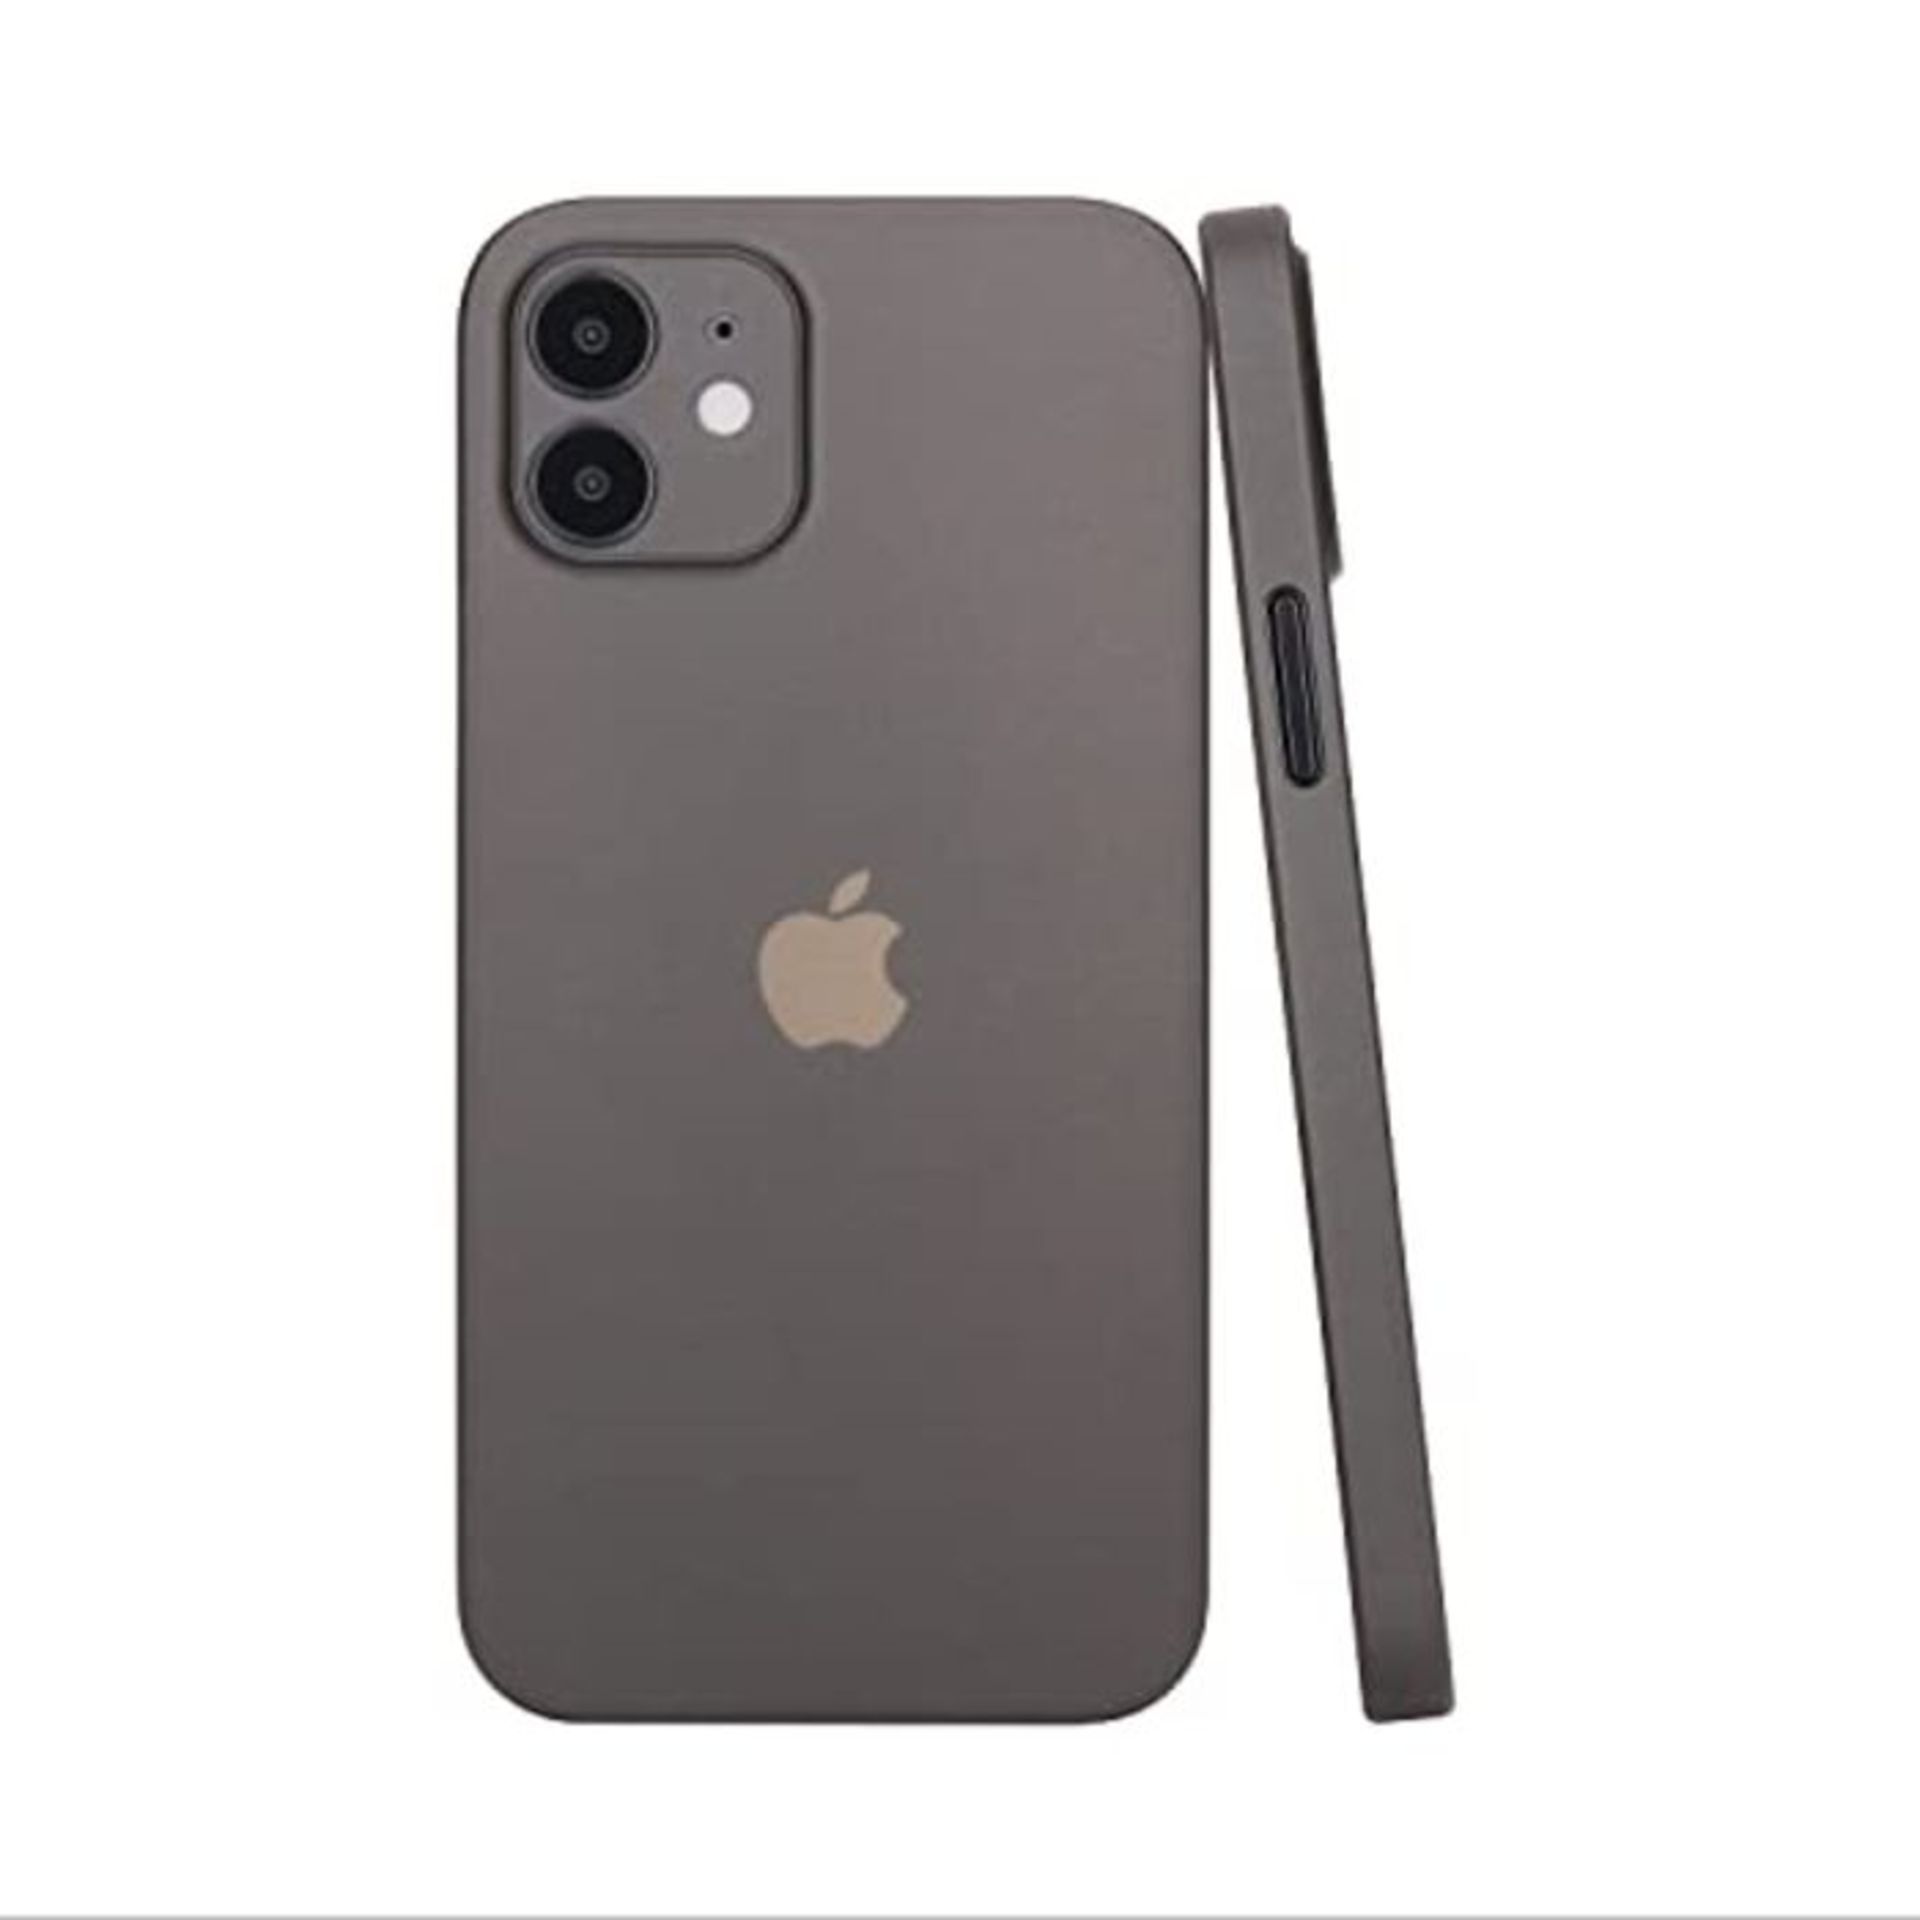 C�E�L�L�B�E�E� �i�P�h�o�n�e� �1�2� �M�i�n�i� �C�a�s�e� �-� �P�r�e�m�i�u�m� �S�l�i�m� �P�r�o�t�e�c�t�